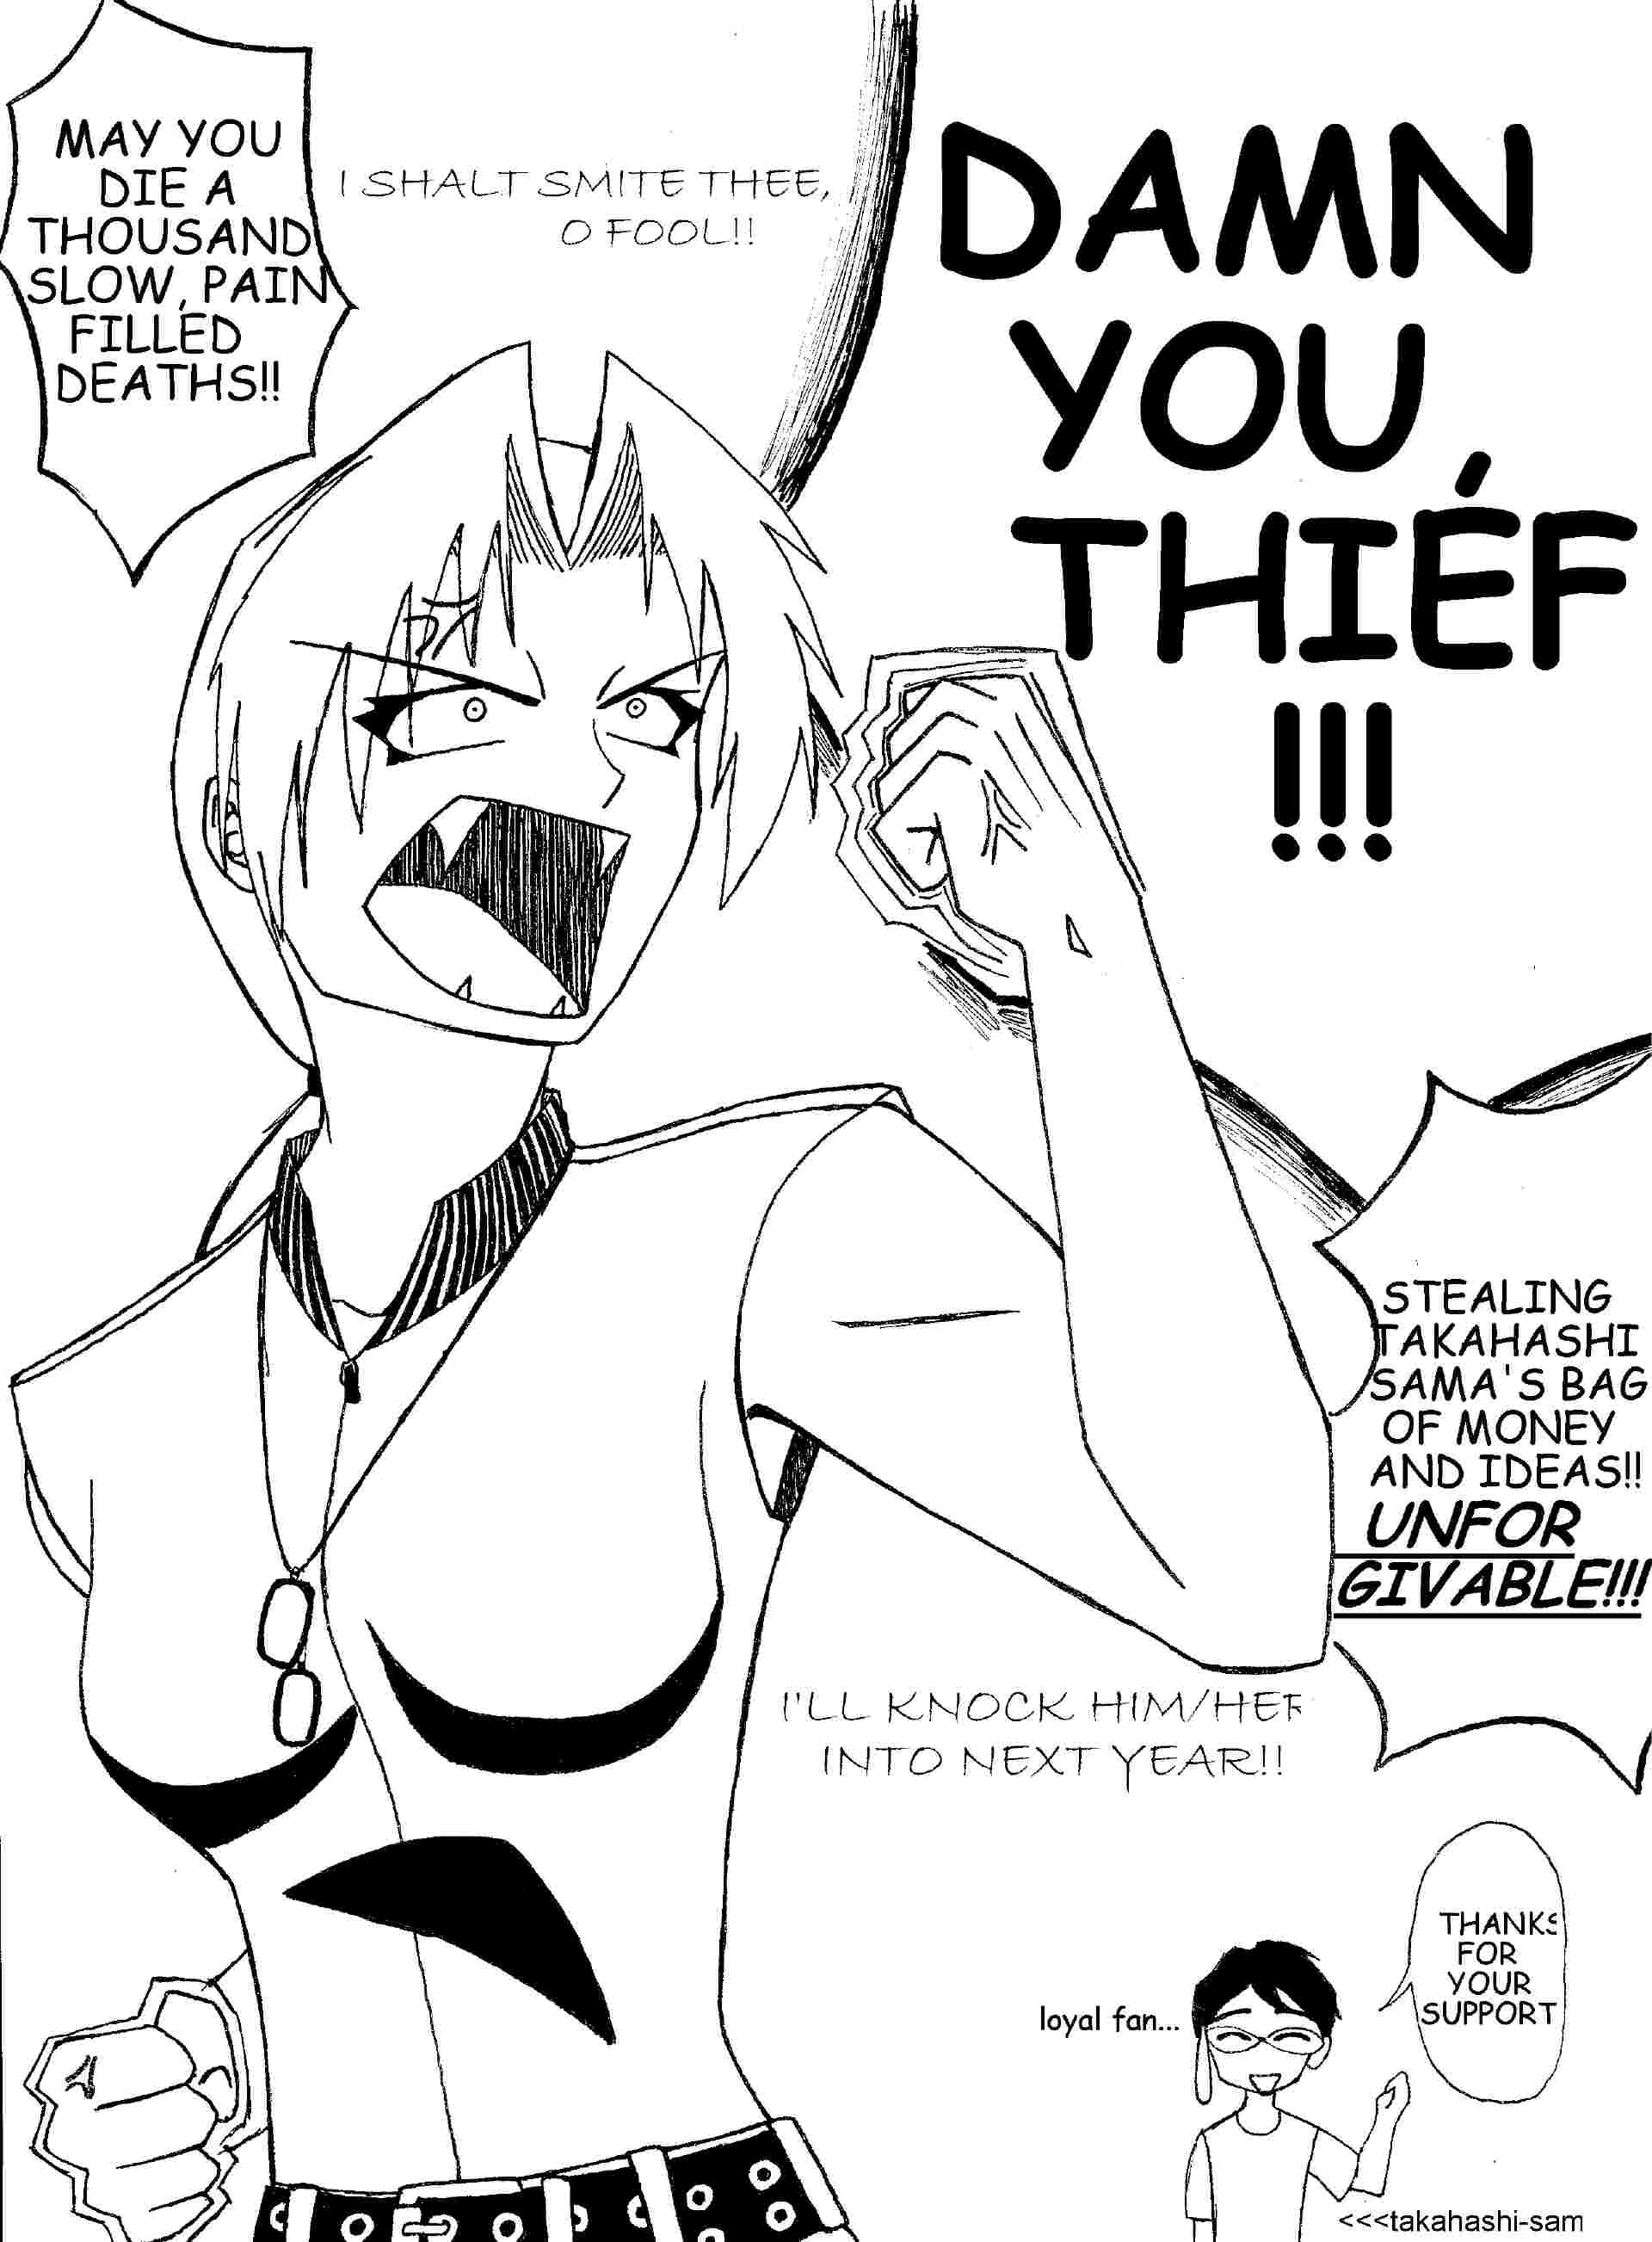 Darn you, thief! by DeathT-2